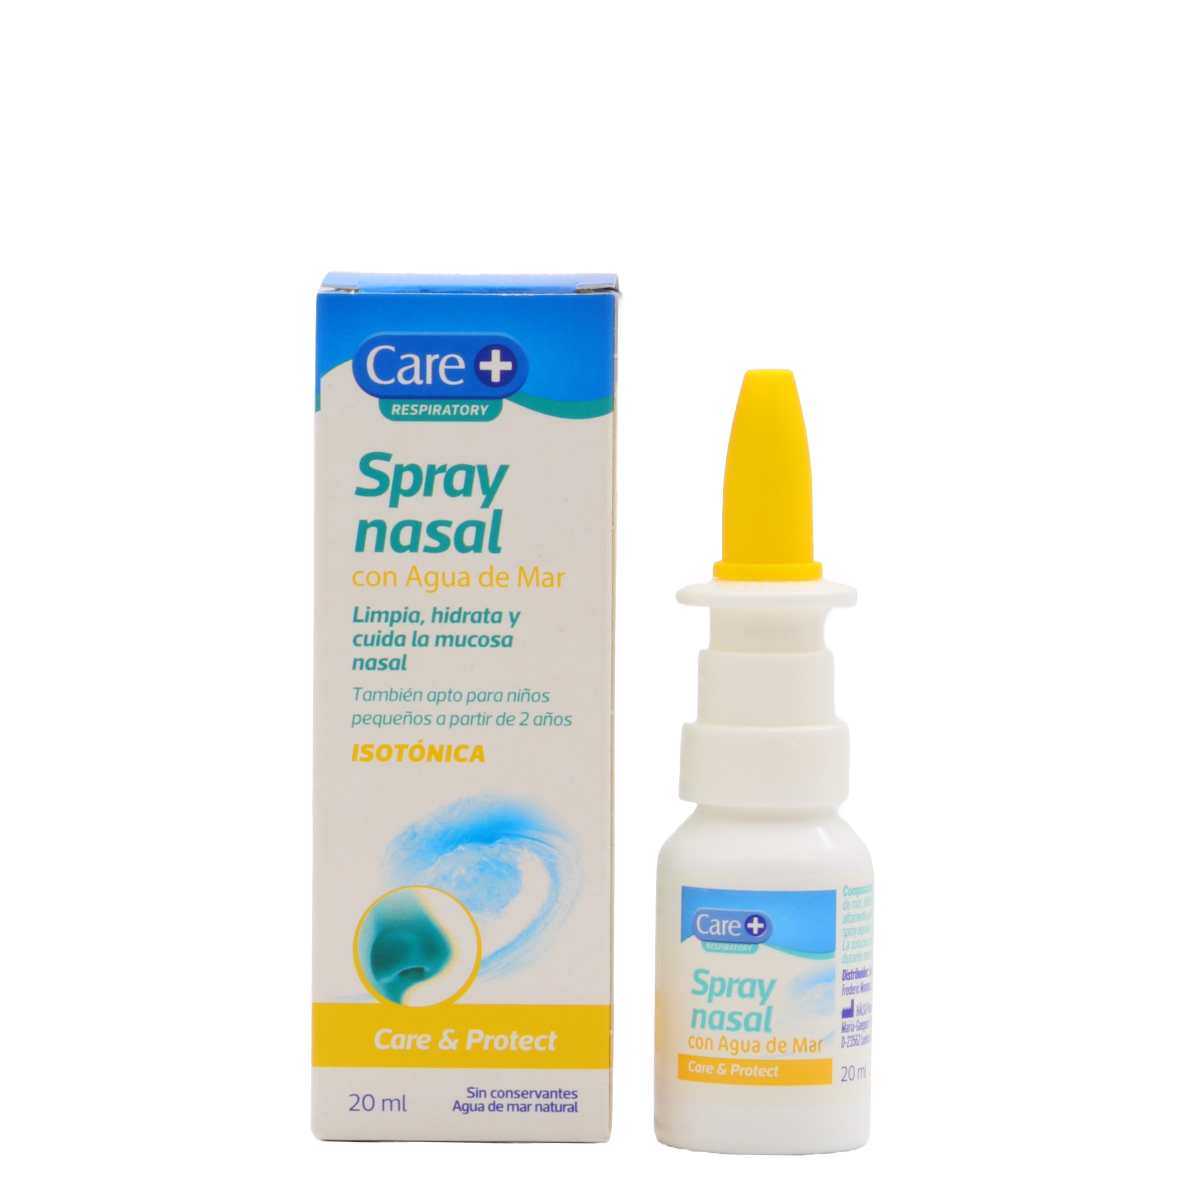 Spray nasal con agua de mar - Careplus